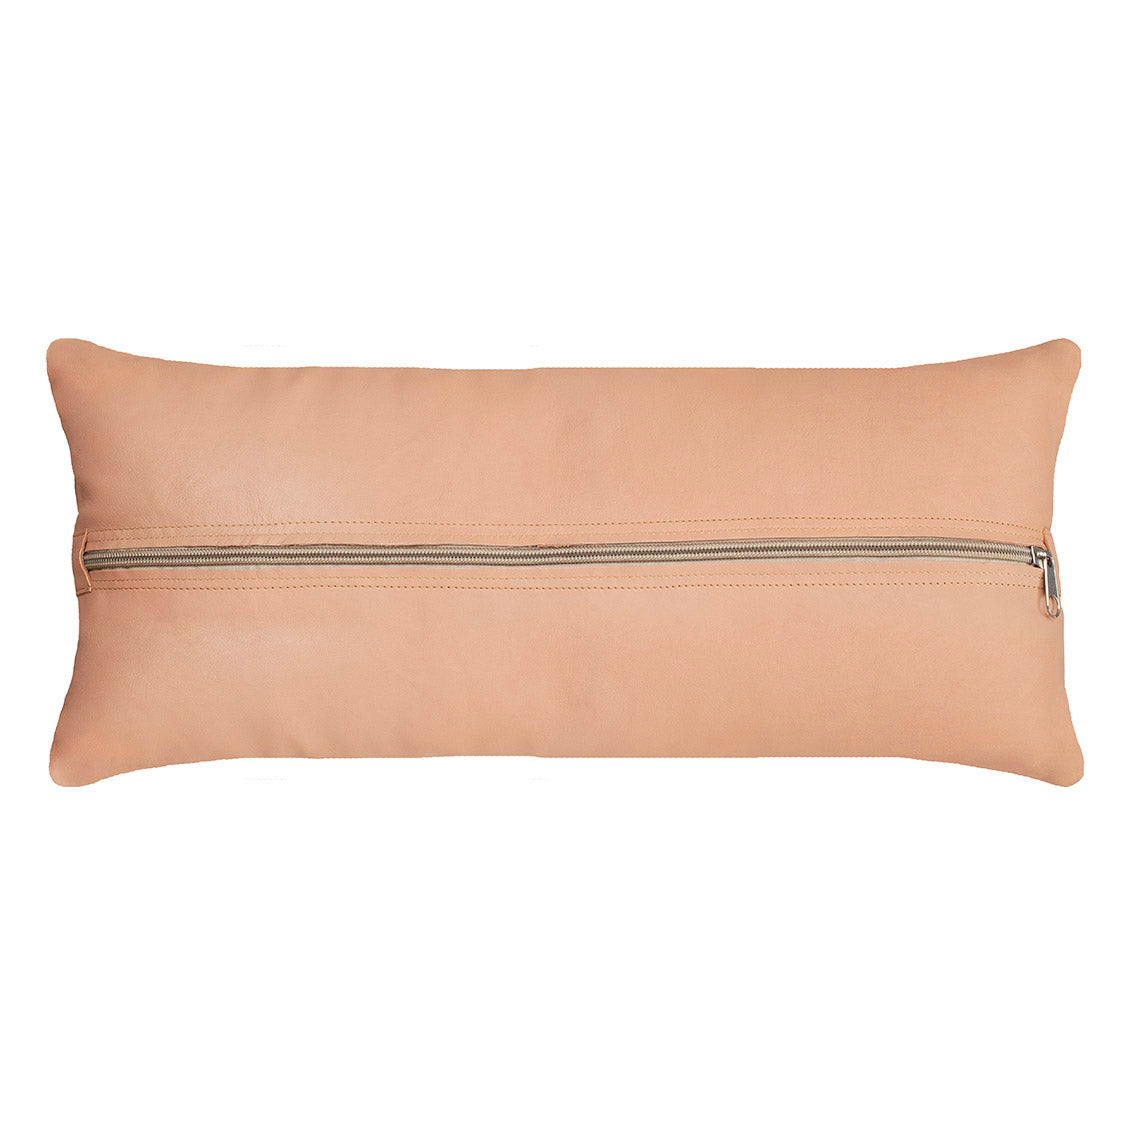 Natural Leather Lumbar Pillow